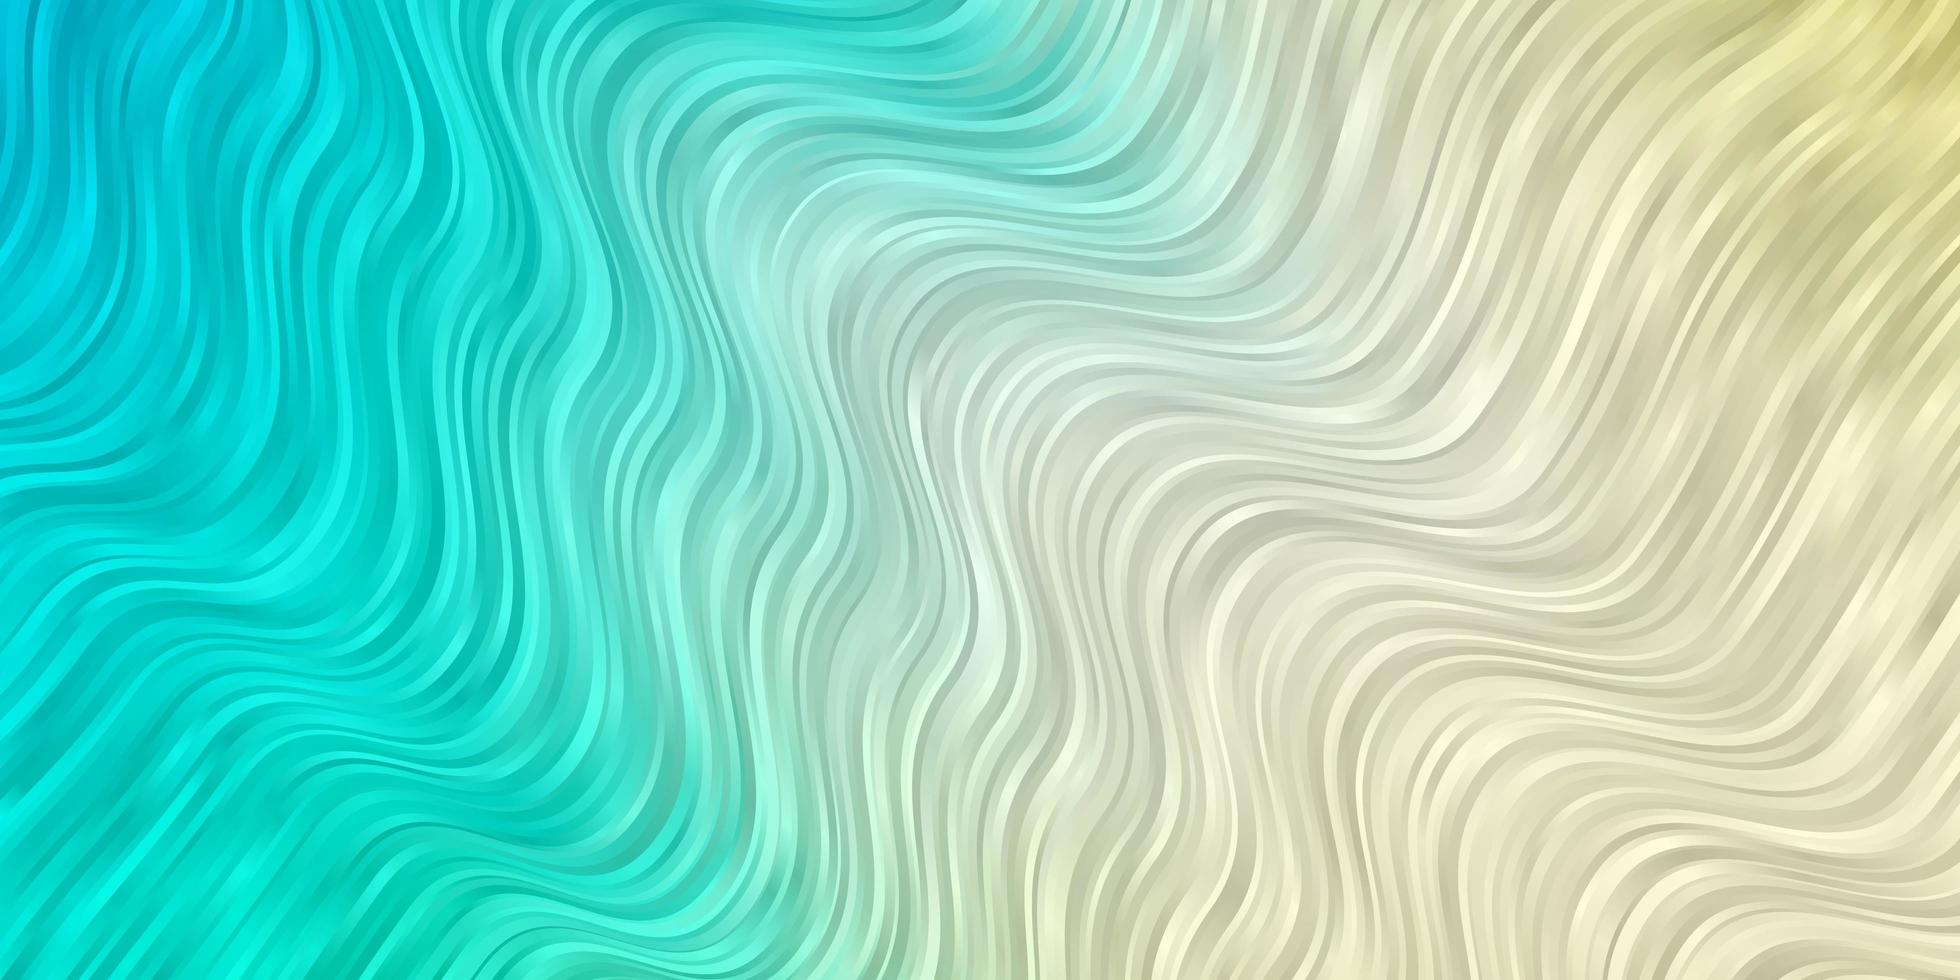 ljusblå, grön mall med linjer. vektor